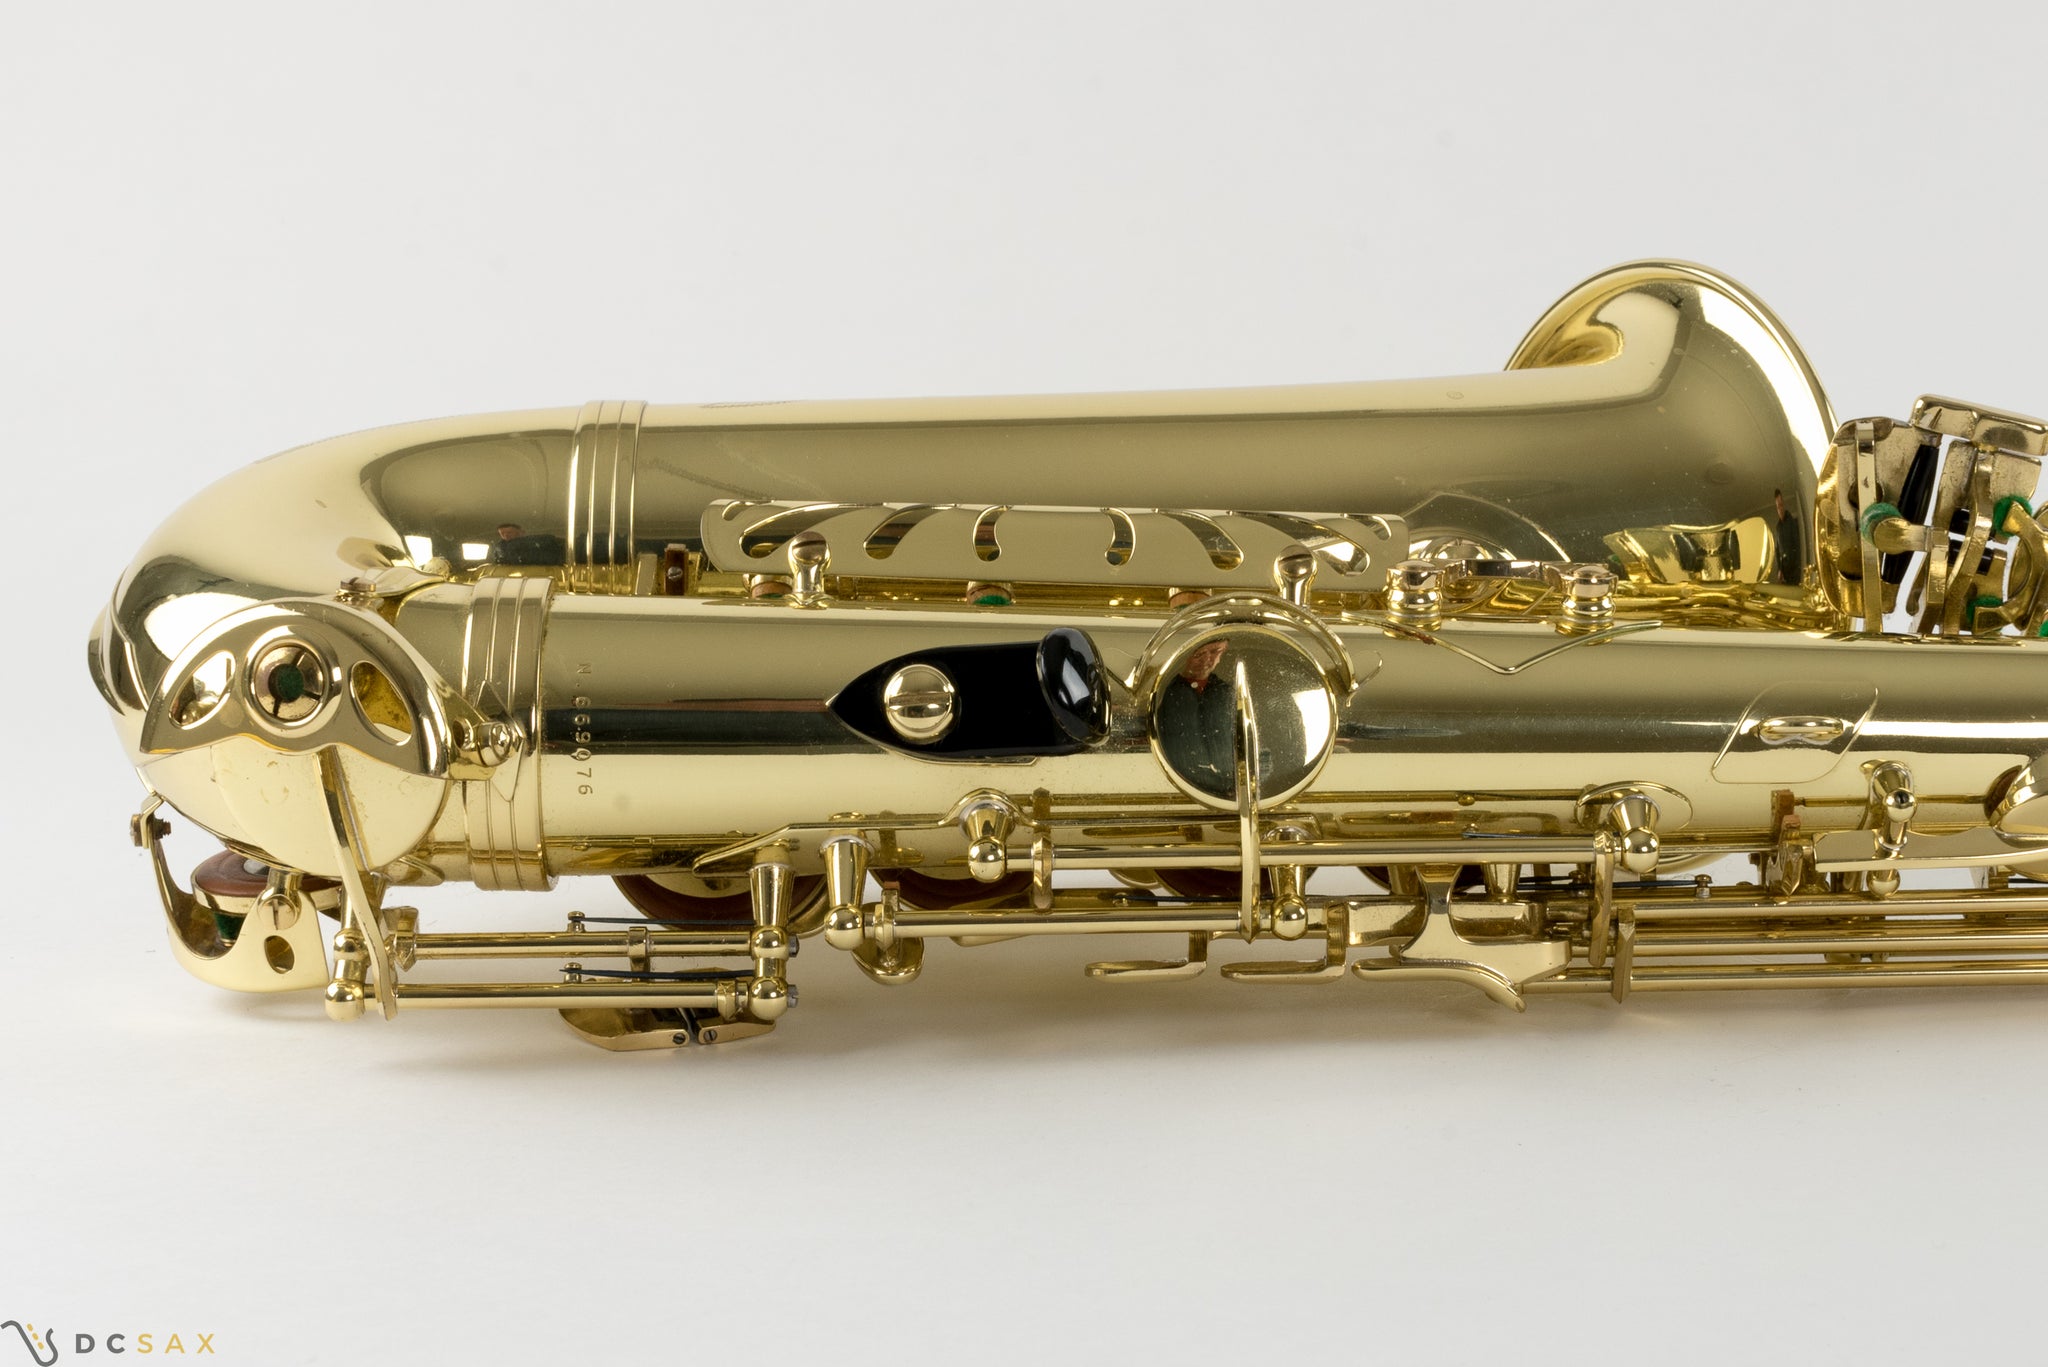 Selmer Series II Alto Saxophone, Just Serviced, Near Mint, Video